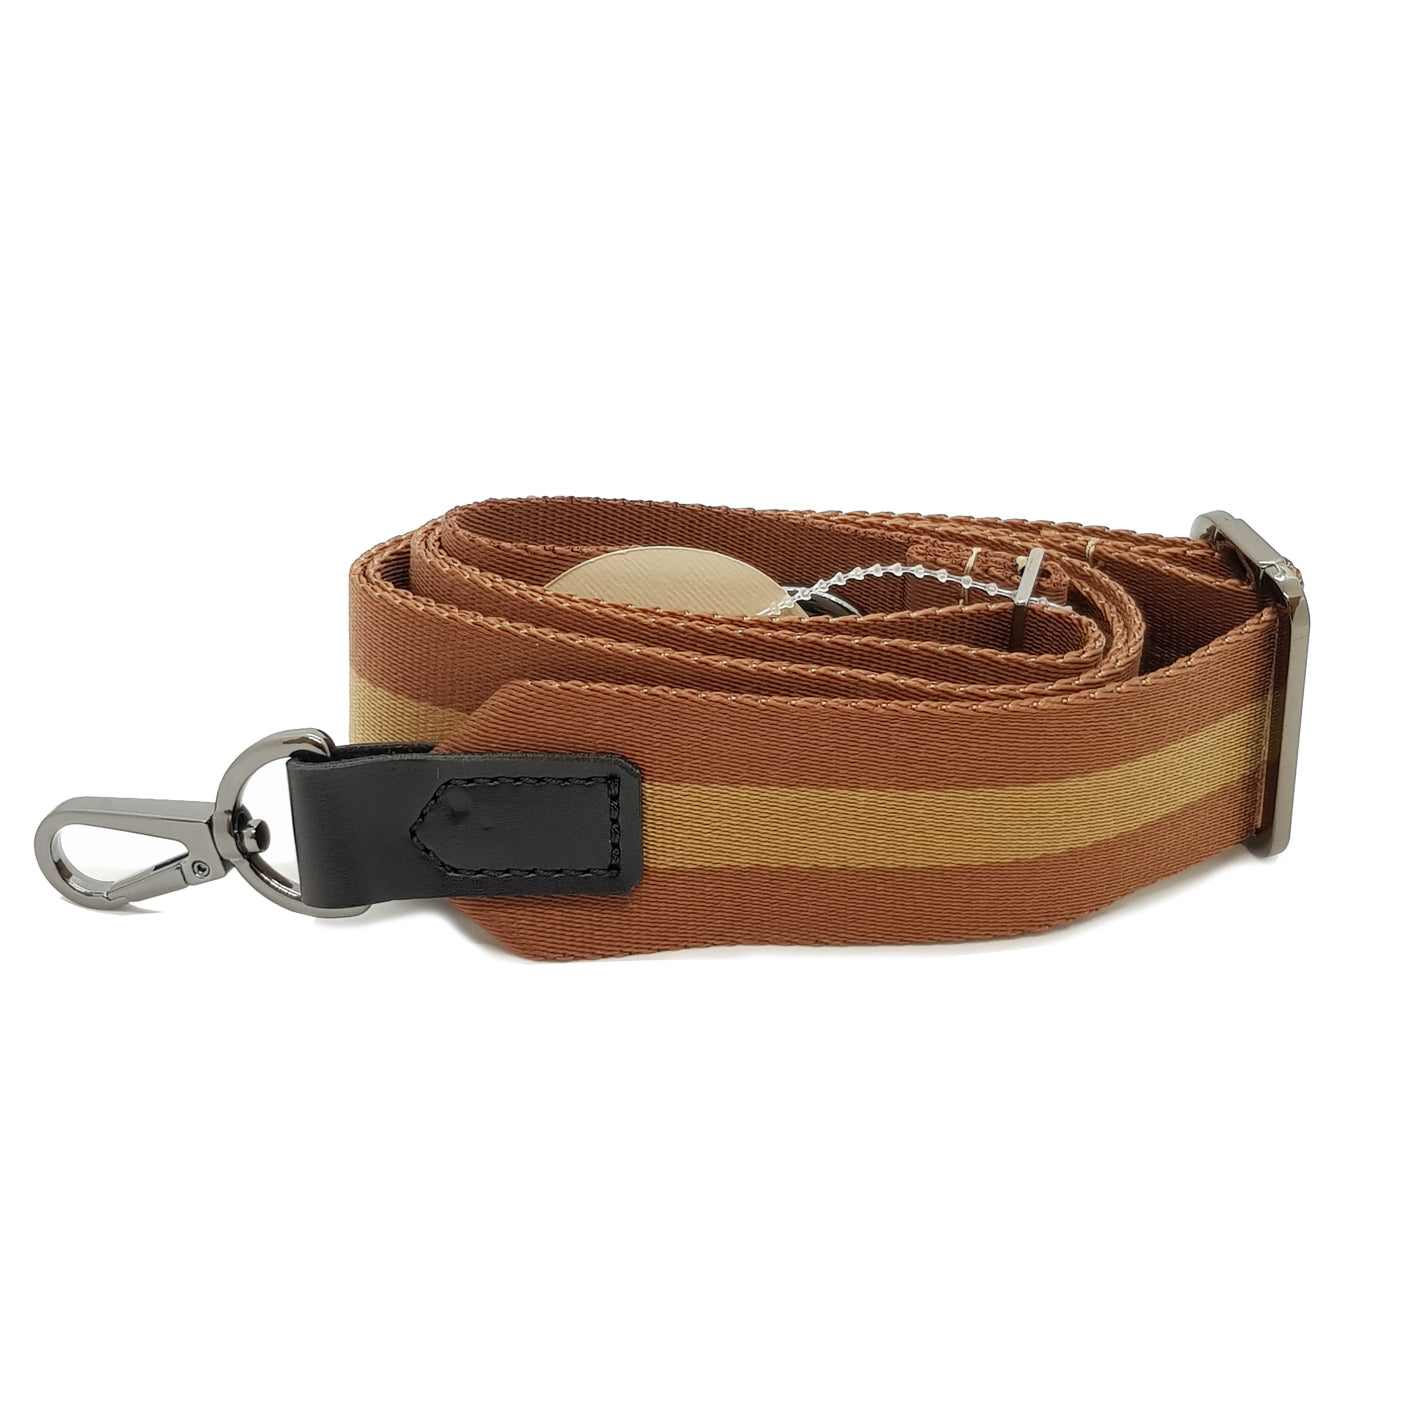 Heavy duty strap - Premium Bags & accessories from L&E Studio